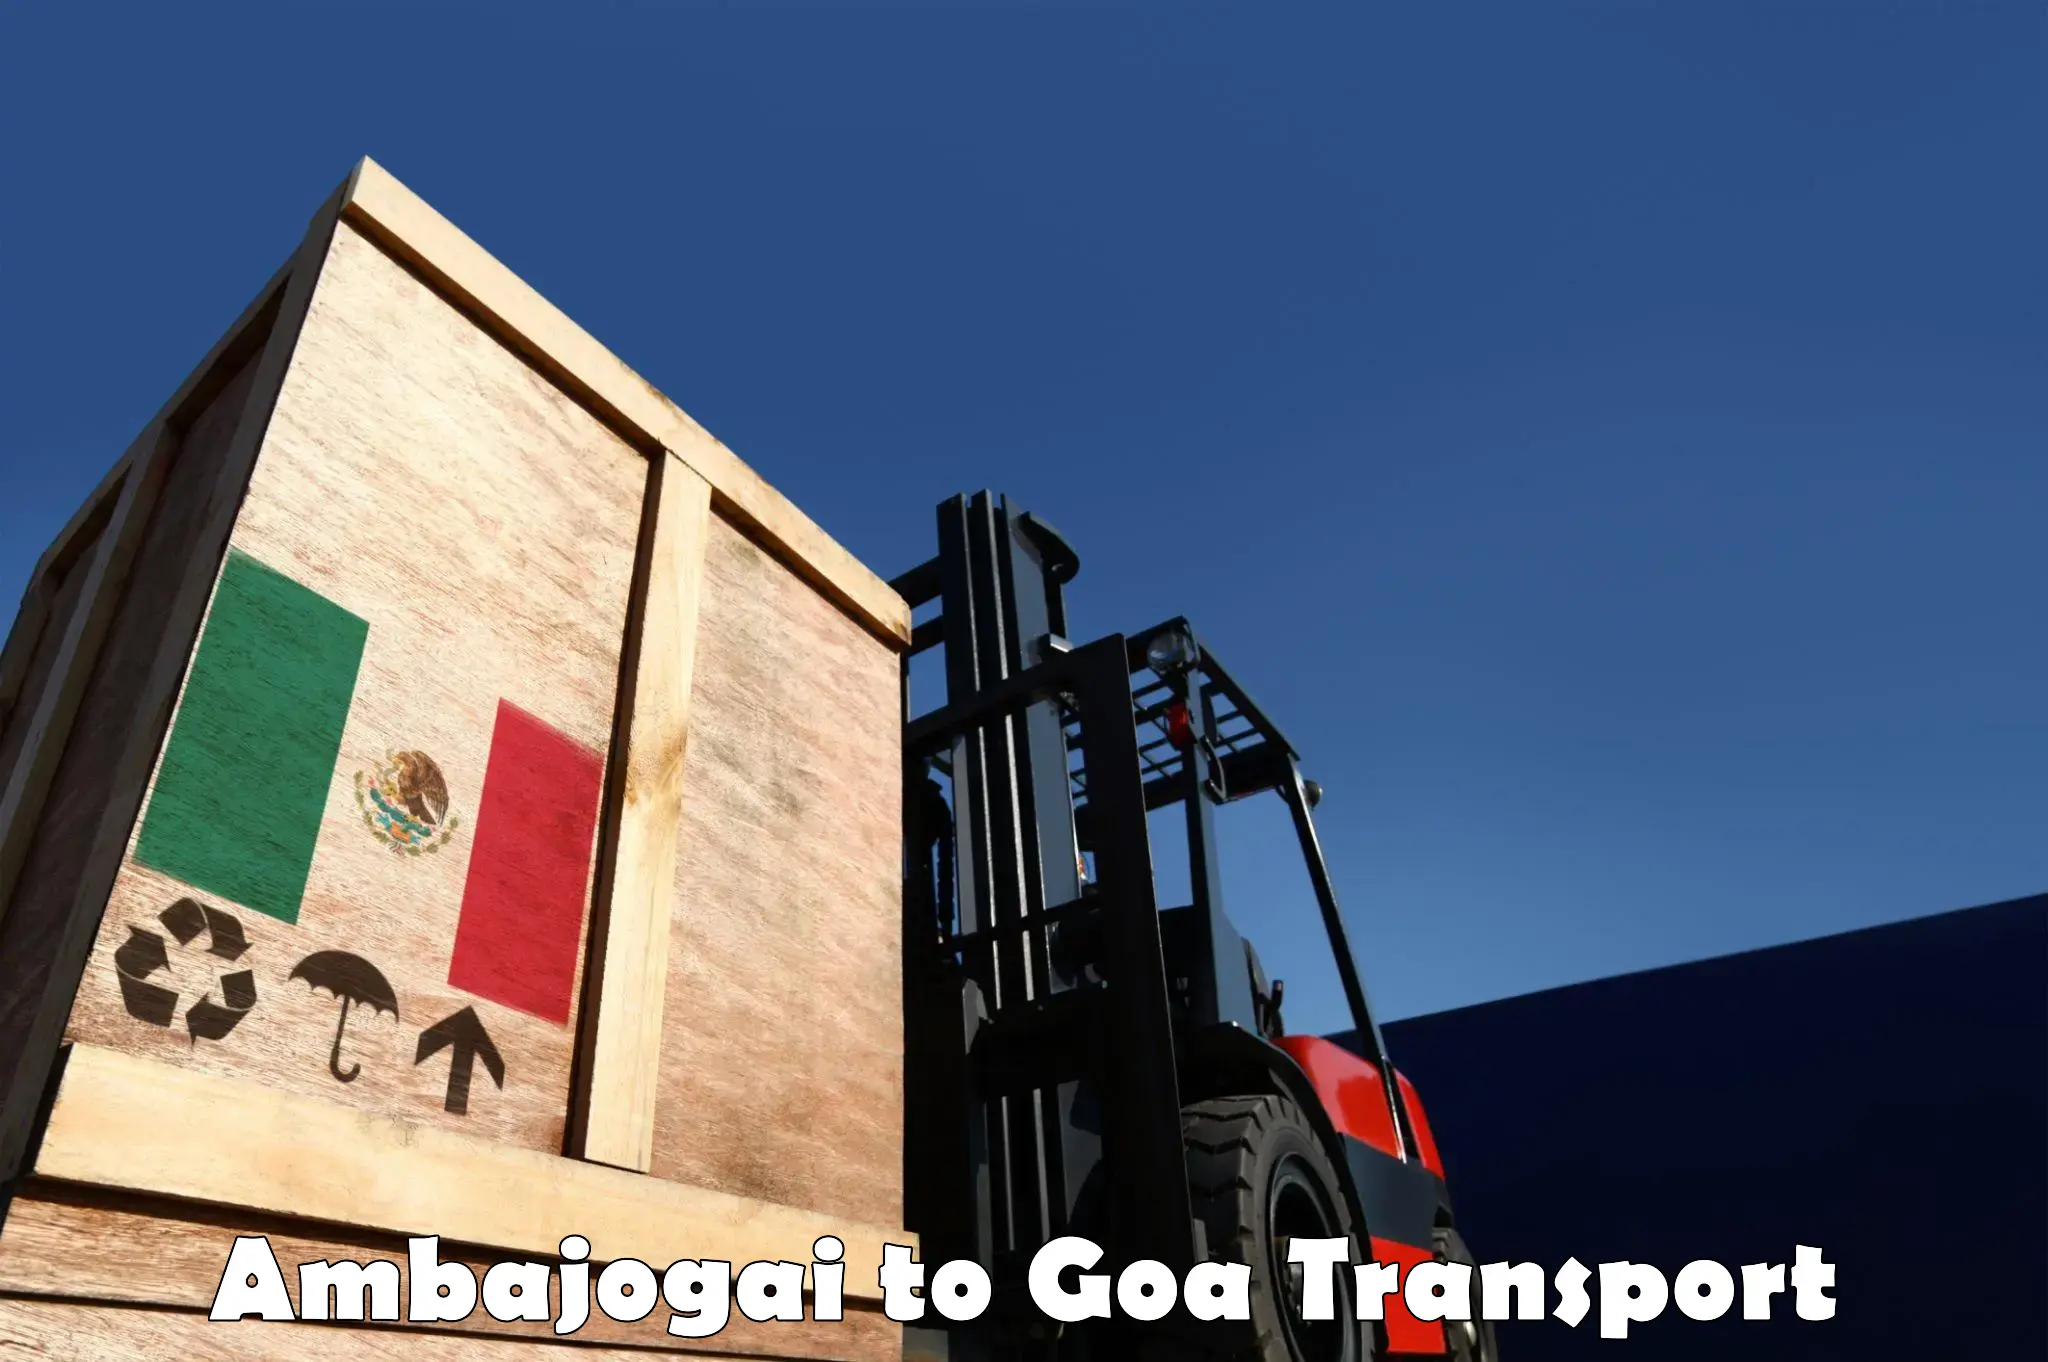 Luggage transport services Ambajogai to Bardez